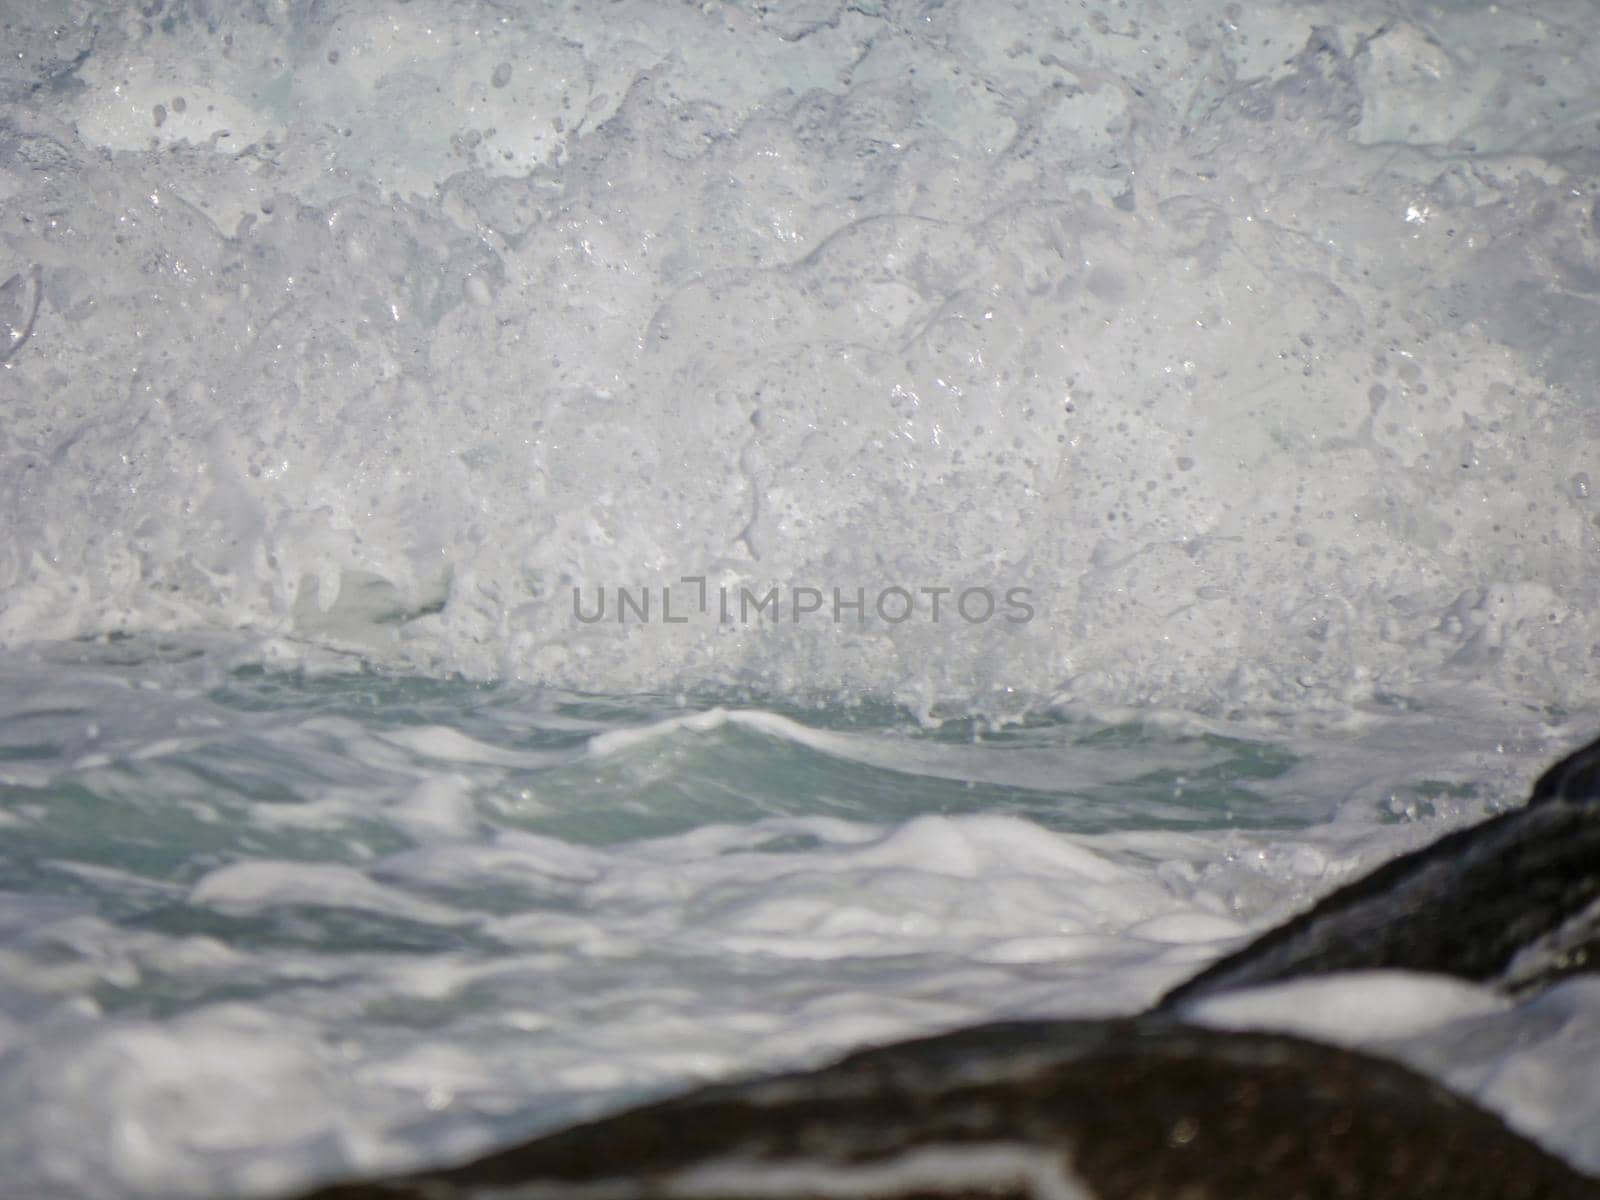 Waves crashing against the rock, natural landscape